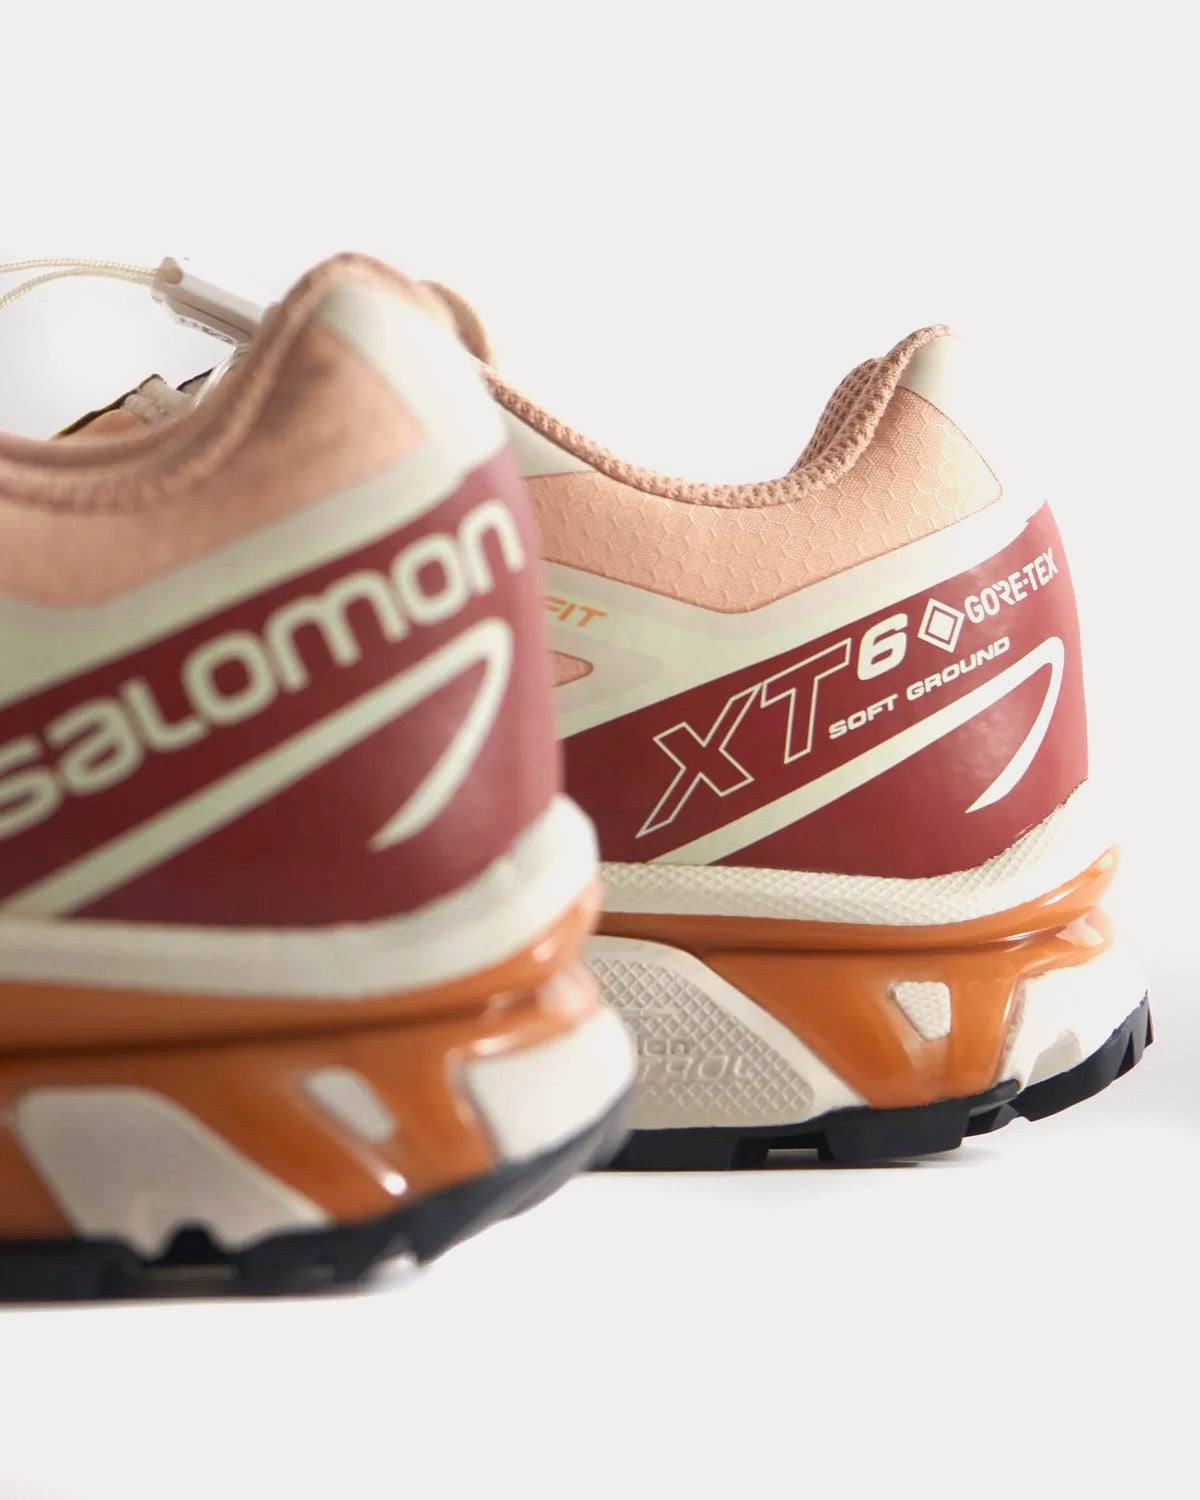 Salomon x Kith - Xt-6 Gore-Tex Hazelnut / Burnt Henna / Vanilla Ice Low Top Sneakers